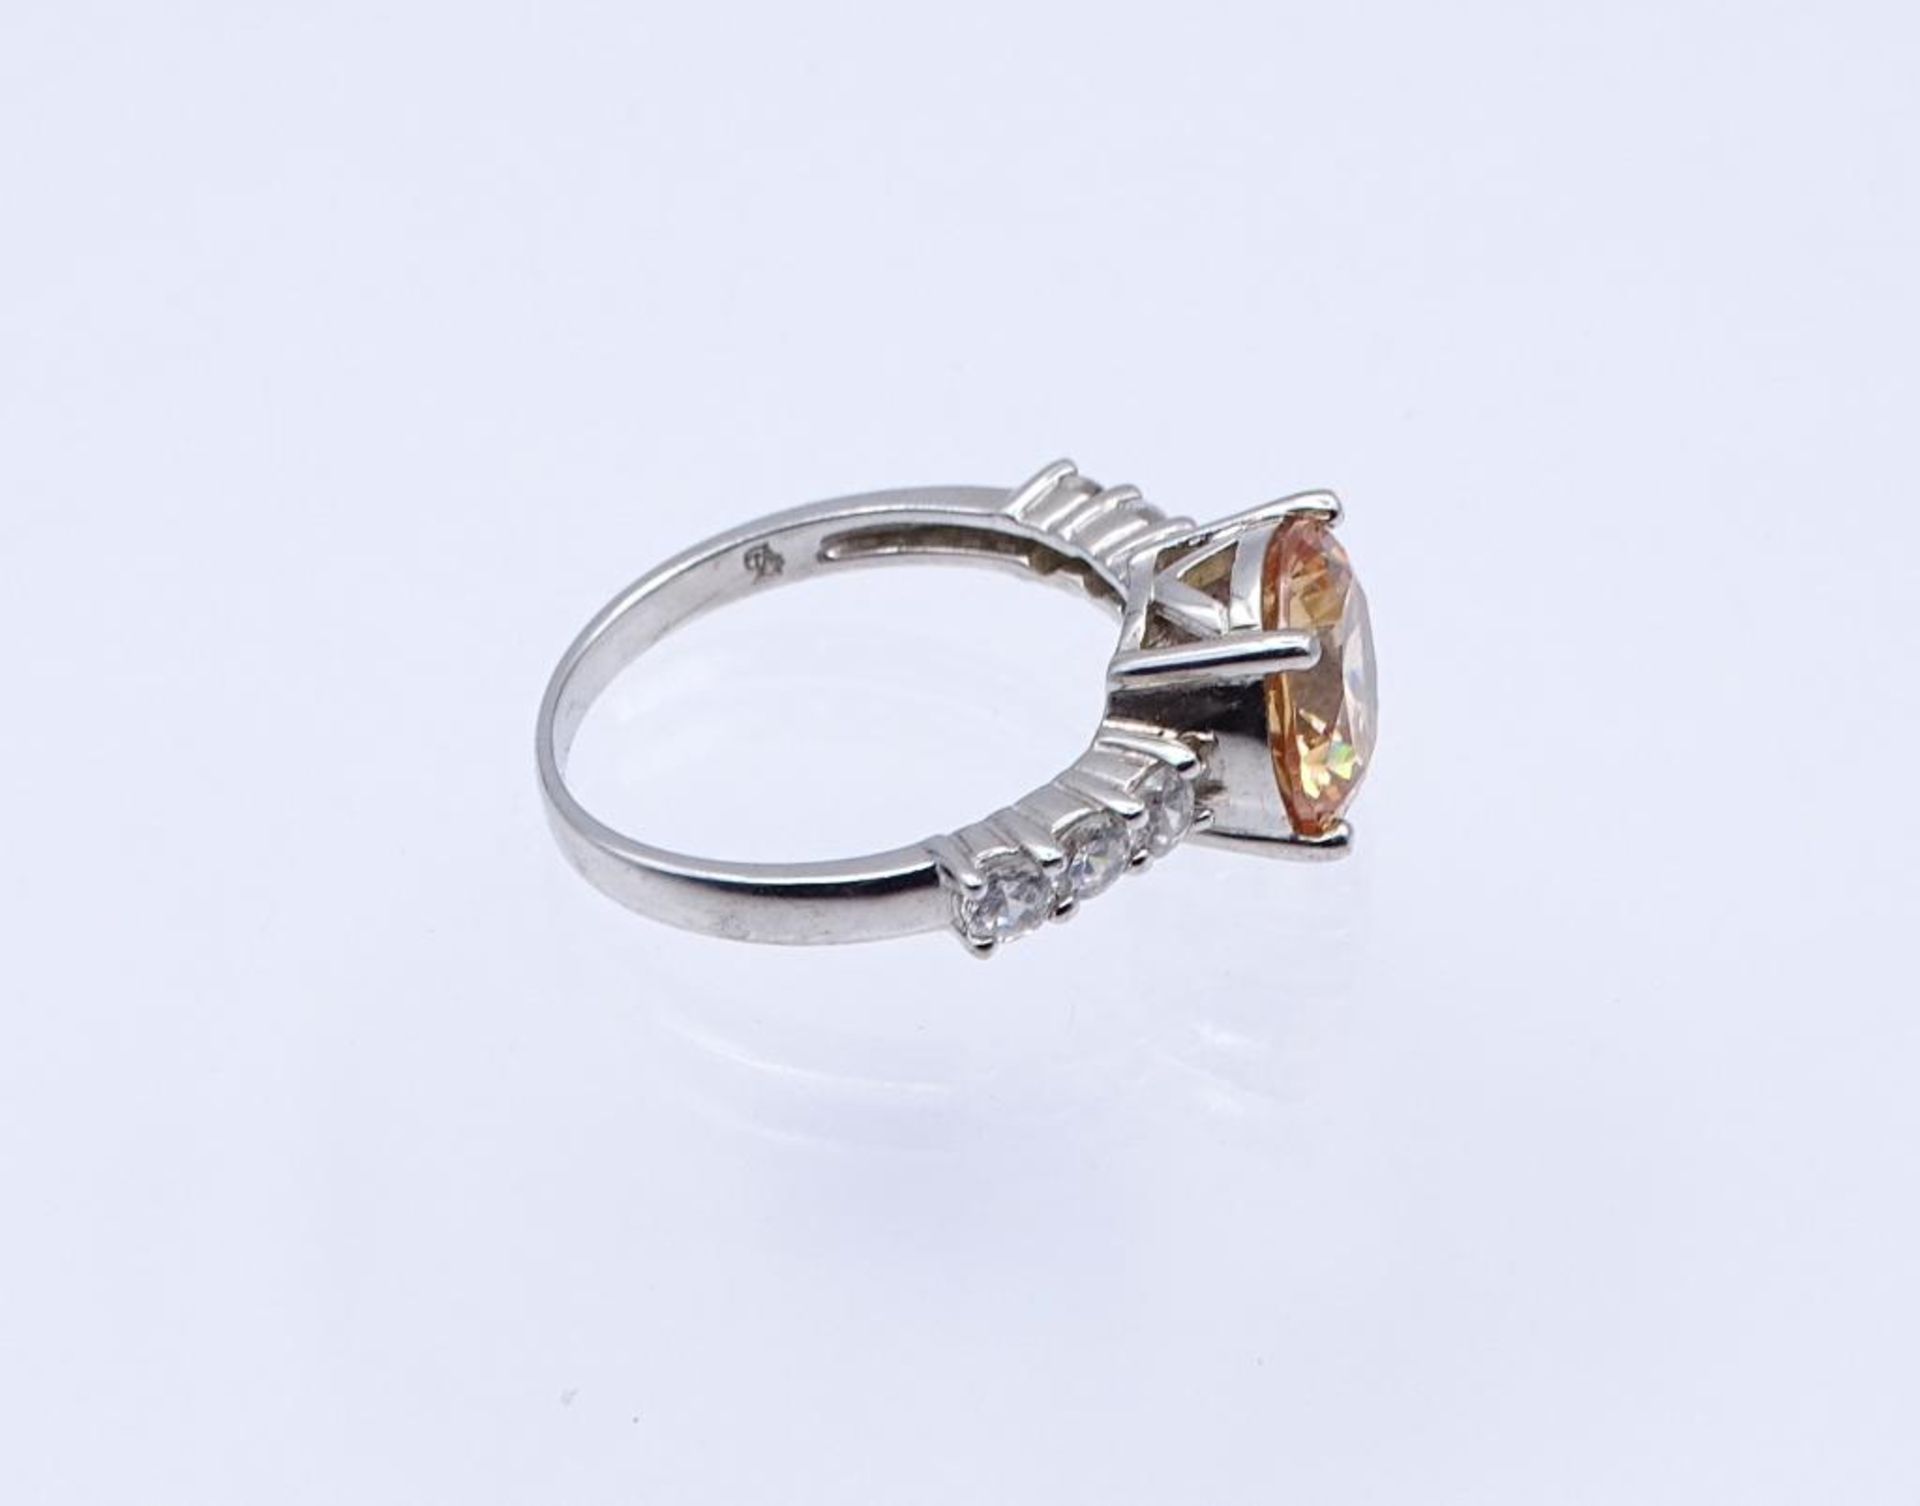 Silber Ring mit Zirkonia, Silber 925/000, 4,8gr. RG 60- - -22.61 % buyer's premium on the hammer - Bild 2 aus 3